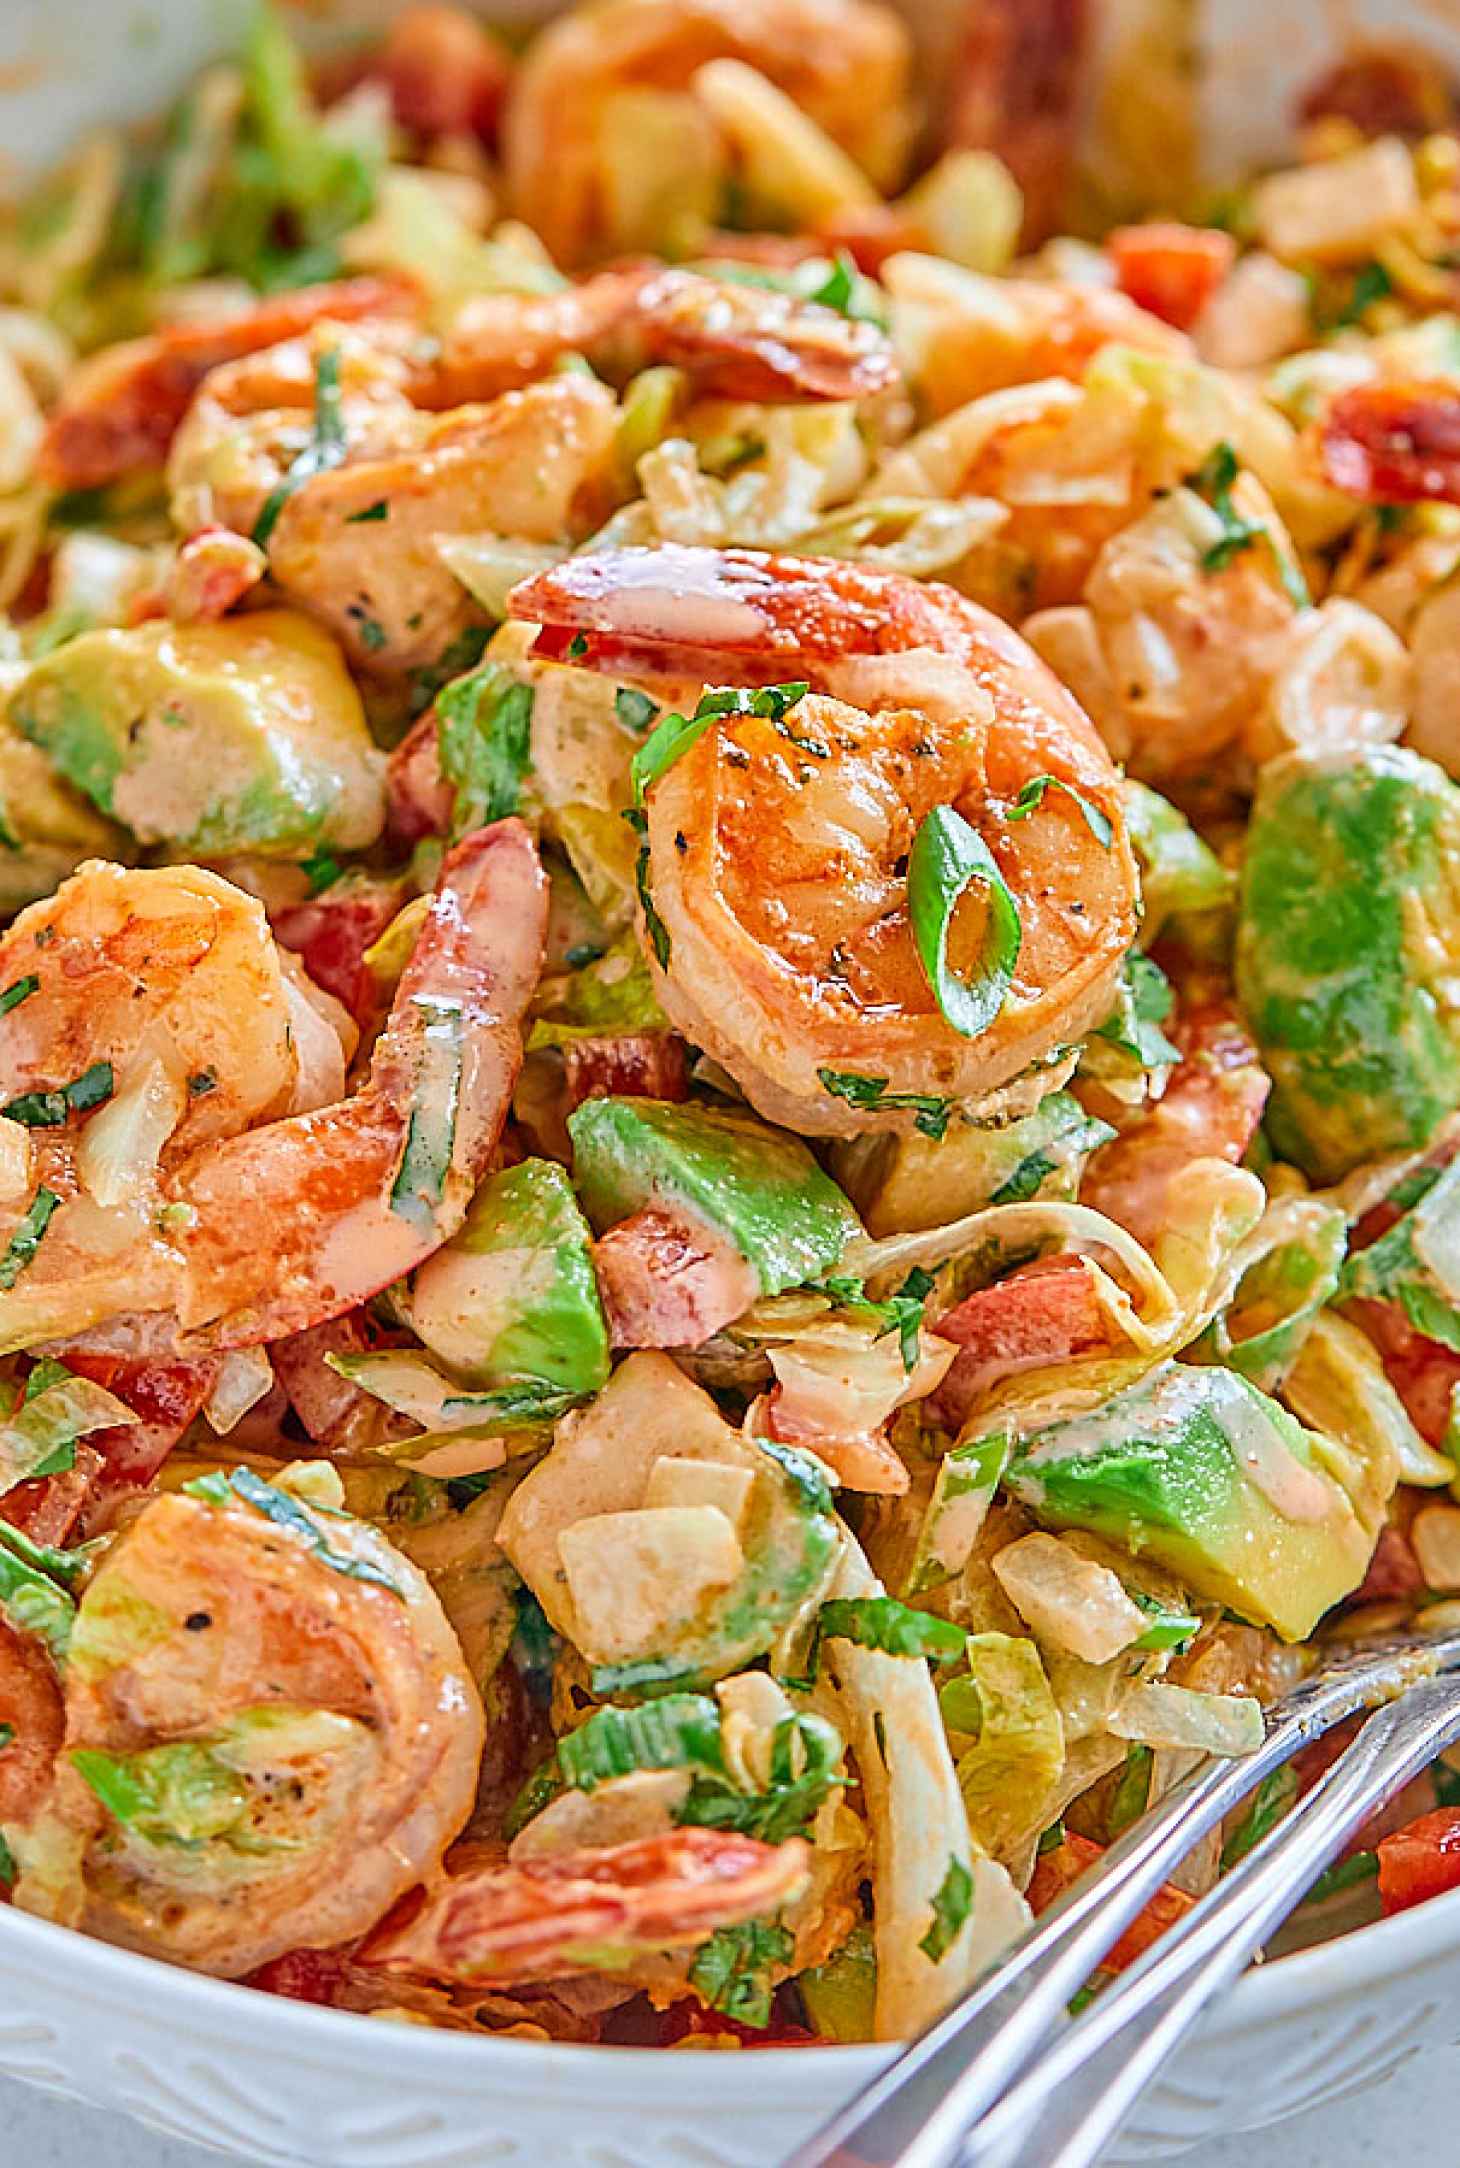 Healthy Lettuce Shrimp Avocado Salad - #recipe by #eatwell101 - https://www.eatwell101.com/healthy-lettuce-shrimp-avocado-salad-recipe